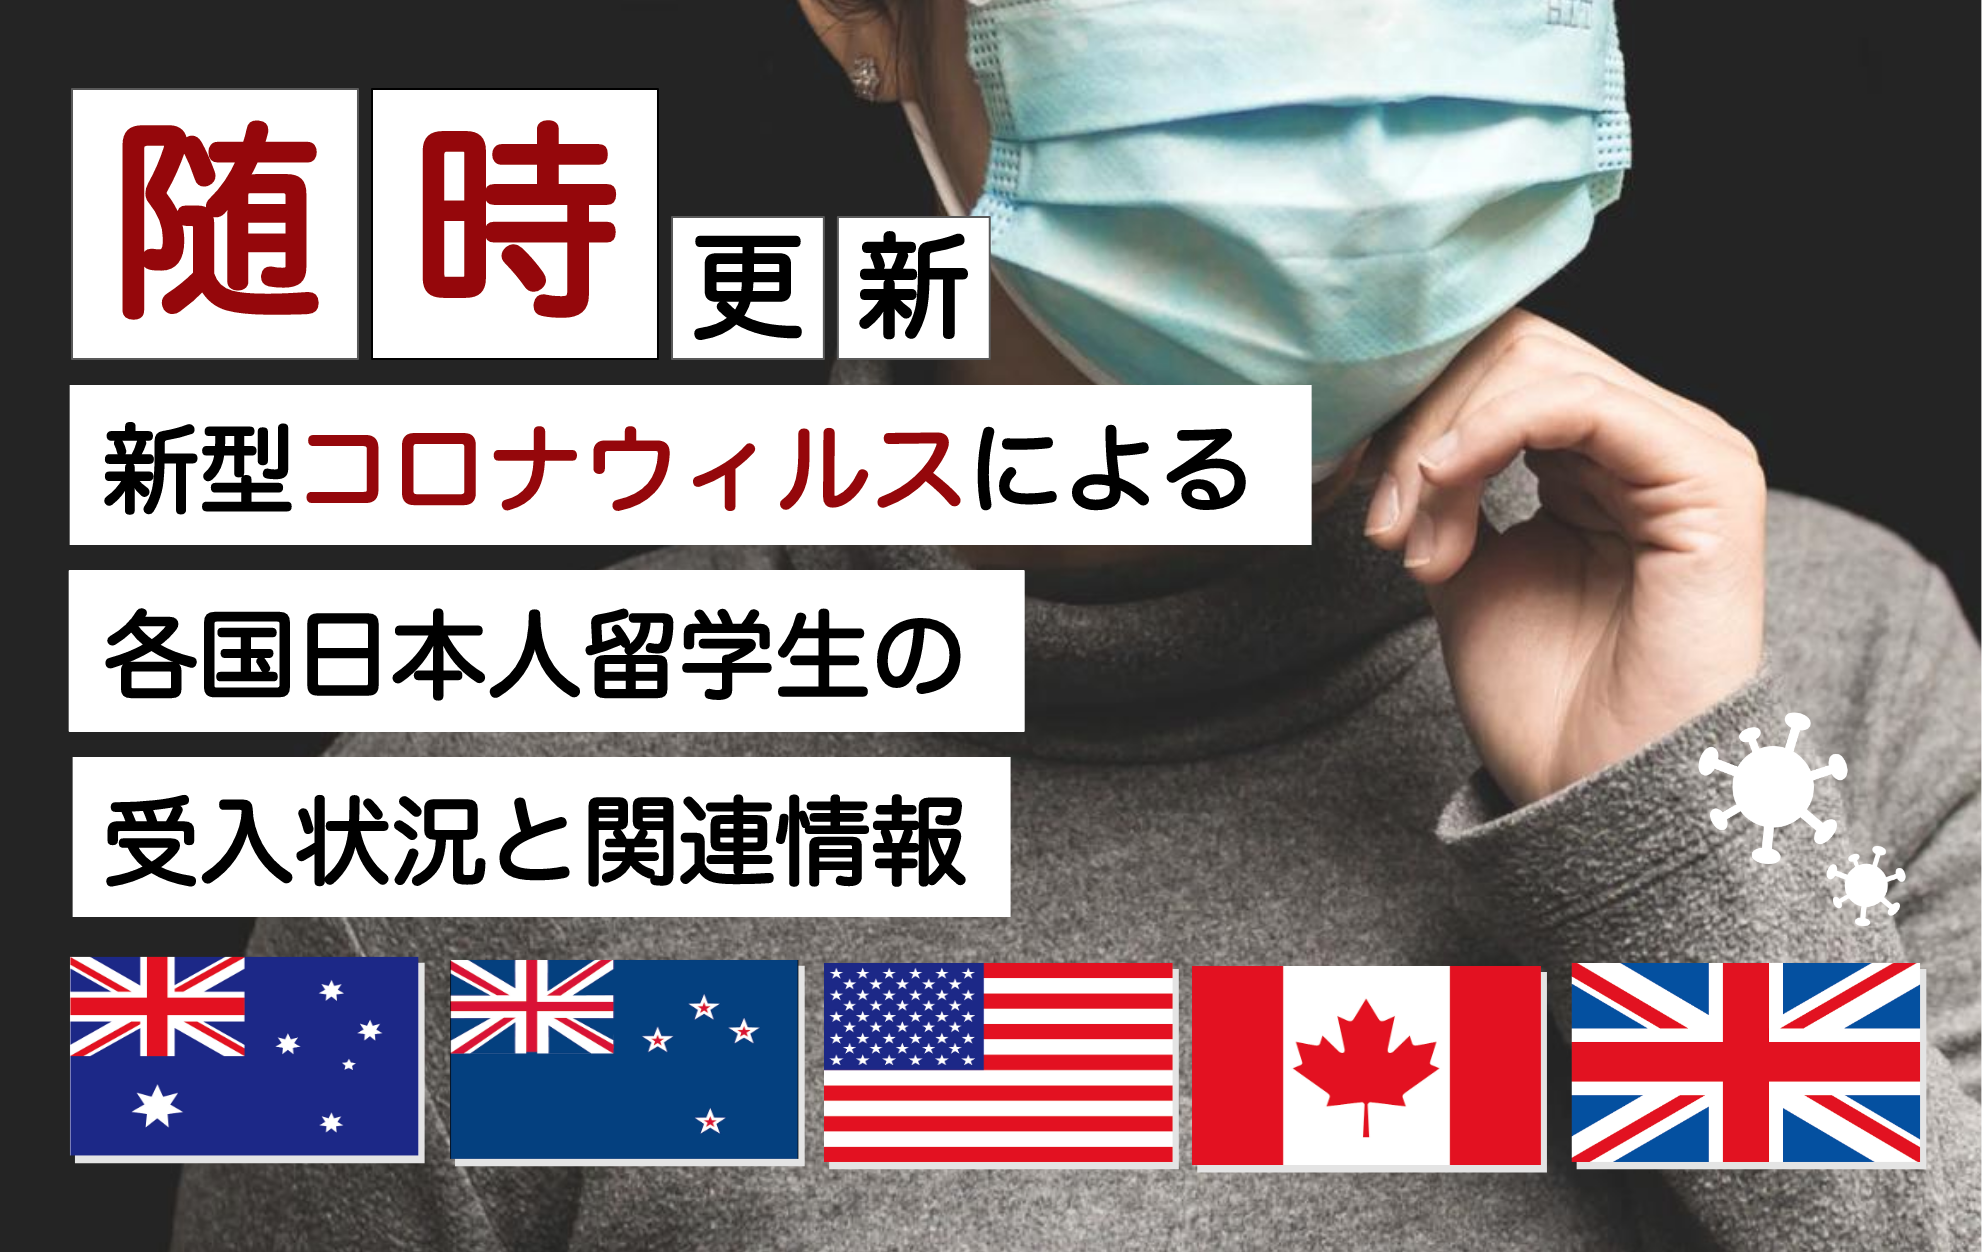 随時更新 新型コロナウイルスによる各国日本人留学生の受入状況と関連情報 ワールドアベニュー